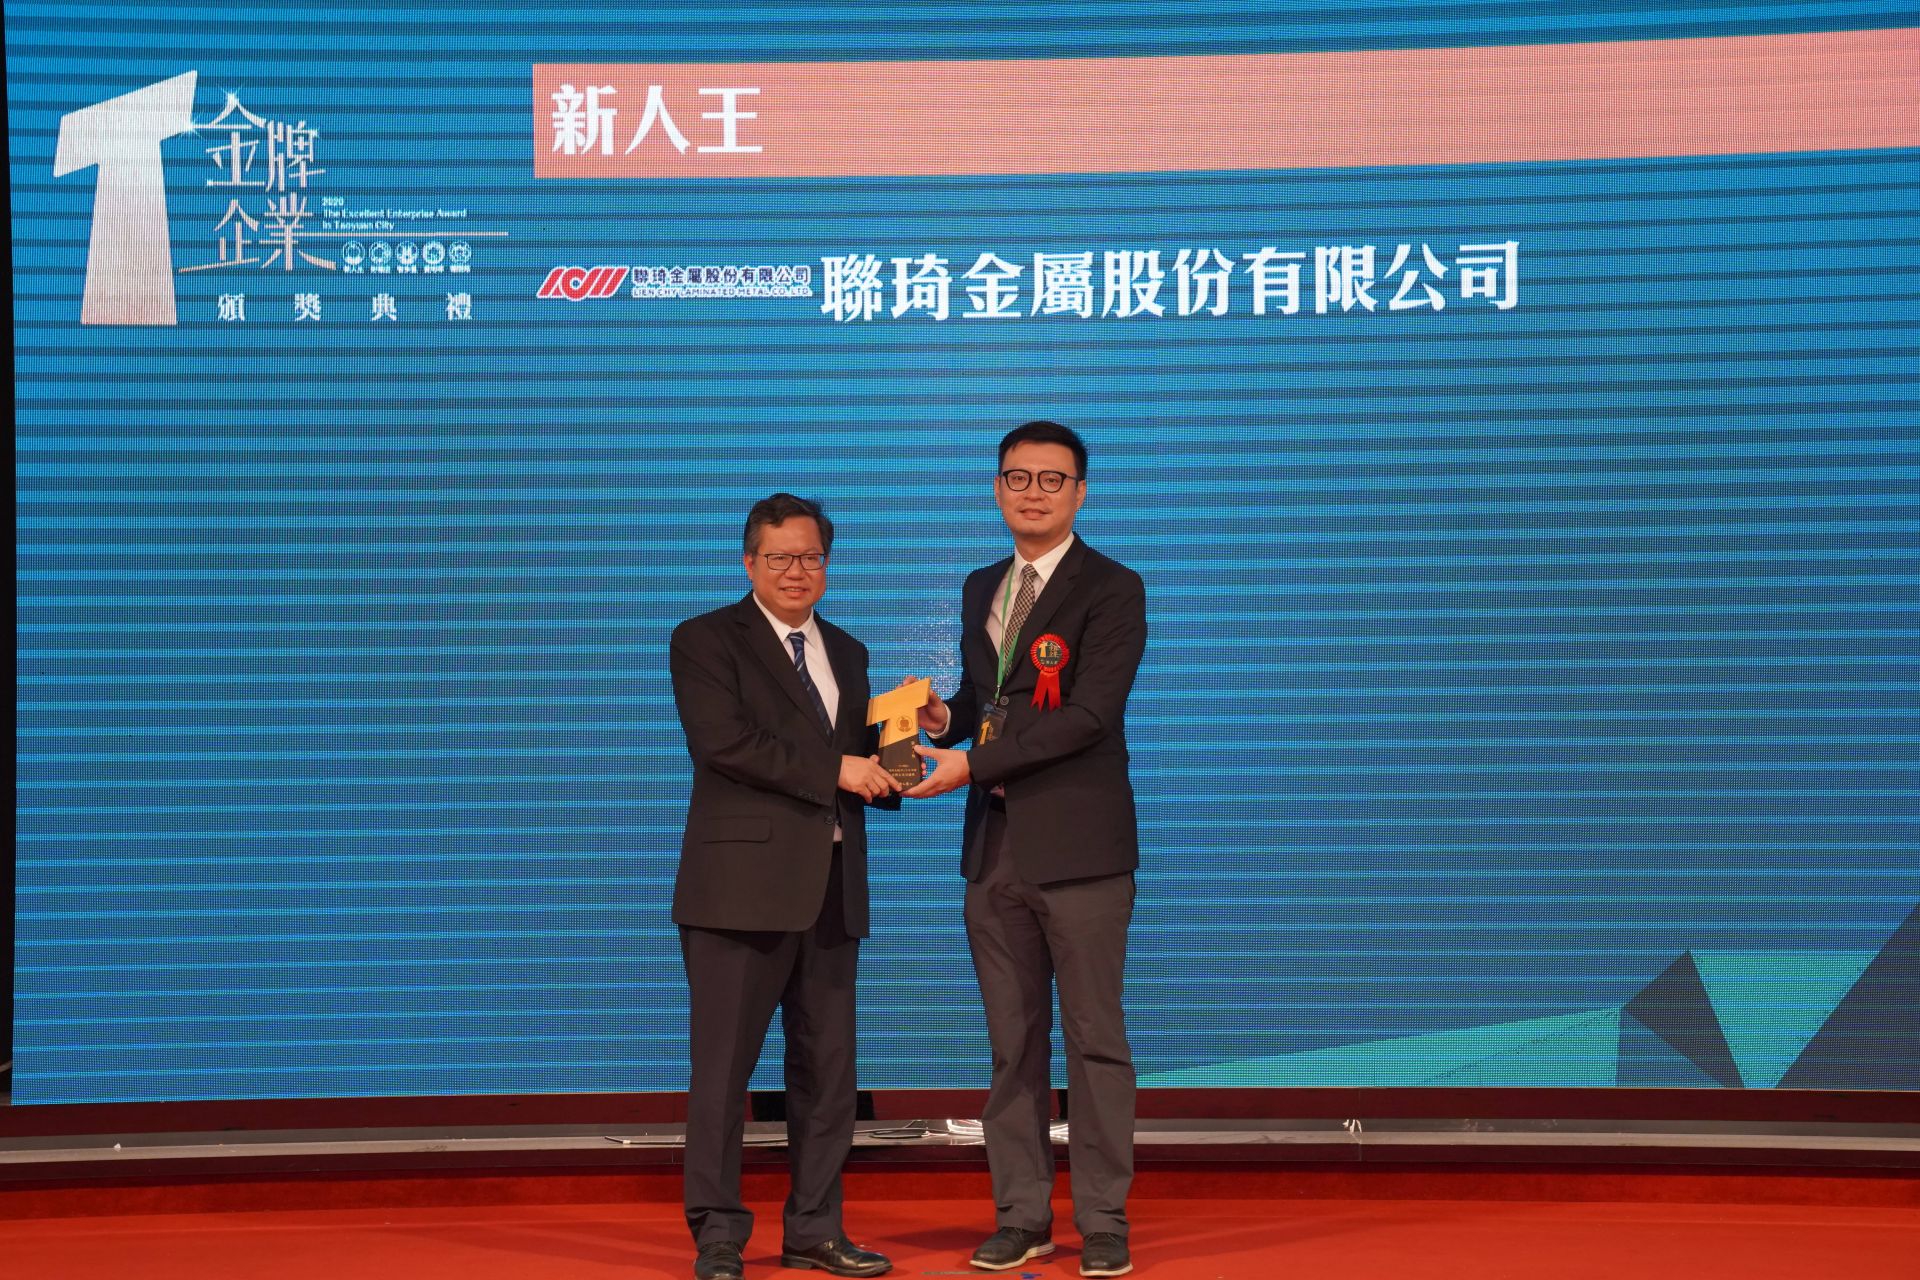 Le maire de la ville de Taoyuan et le directeur général de Lien Chy, le Dr Chuang, lors de la cérémonie de remise des prix